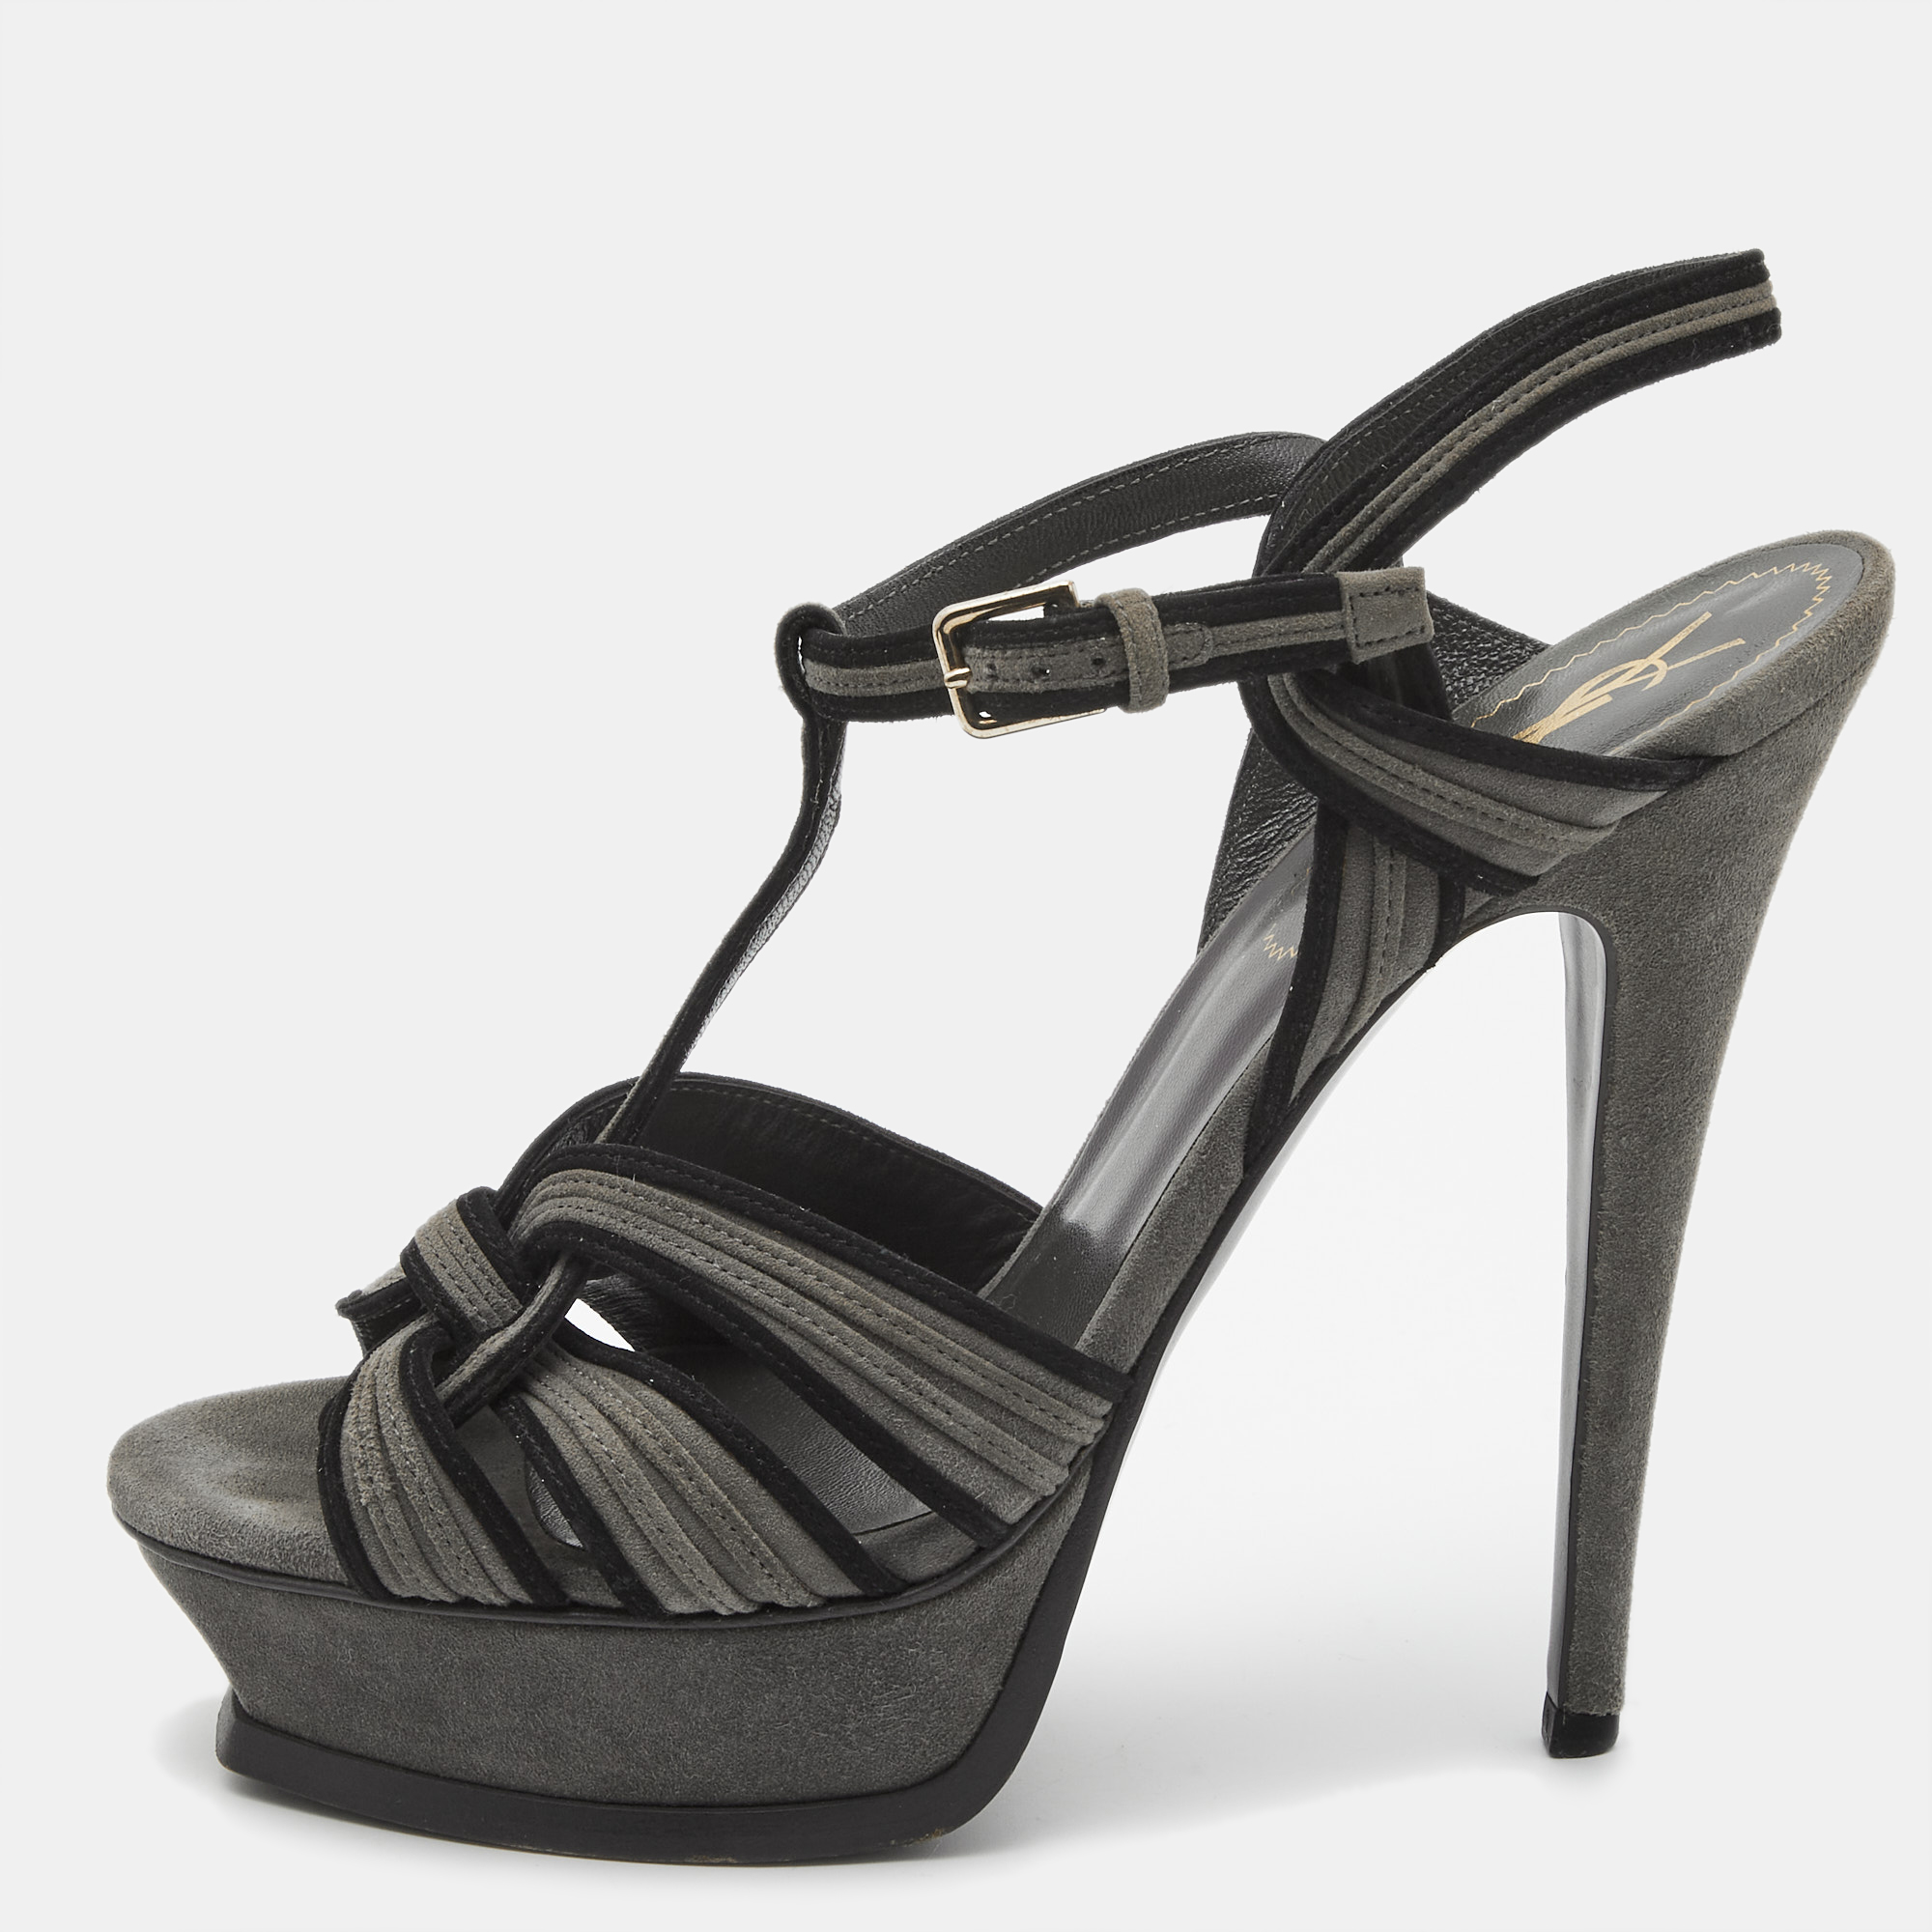 Saint laurent paris saint laurent grey/black suede tribute sandals size 39